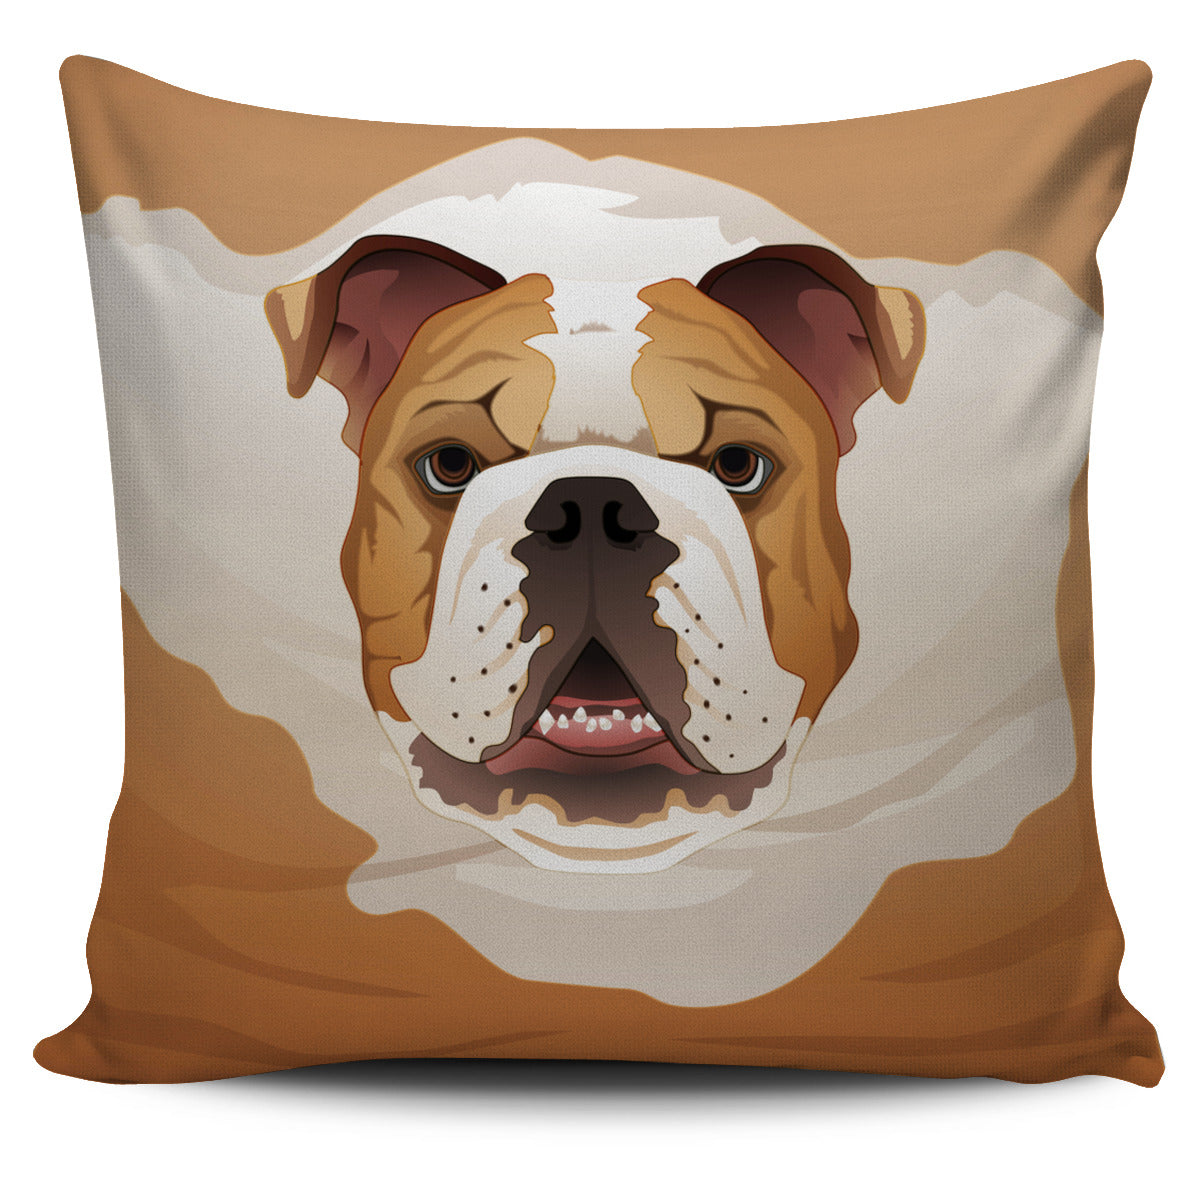 Real English Bulldog Pillow Cover